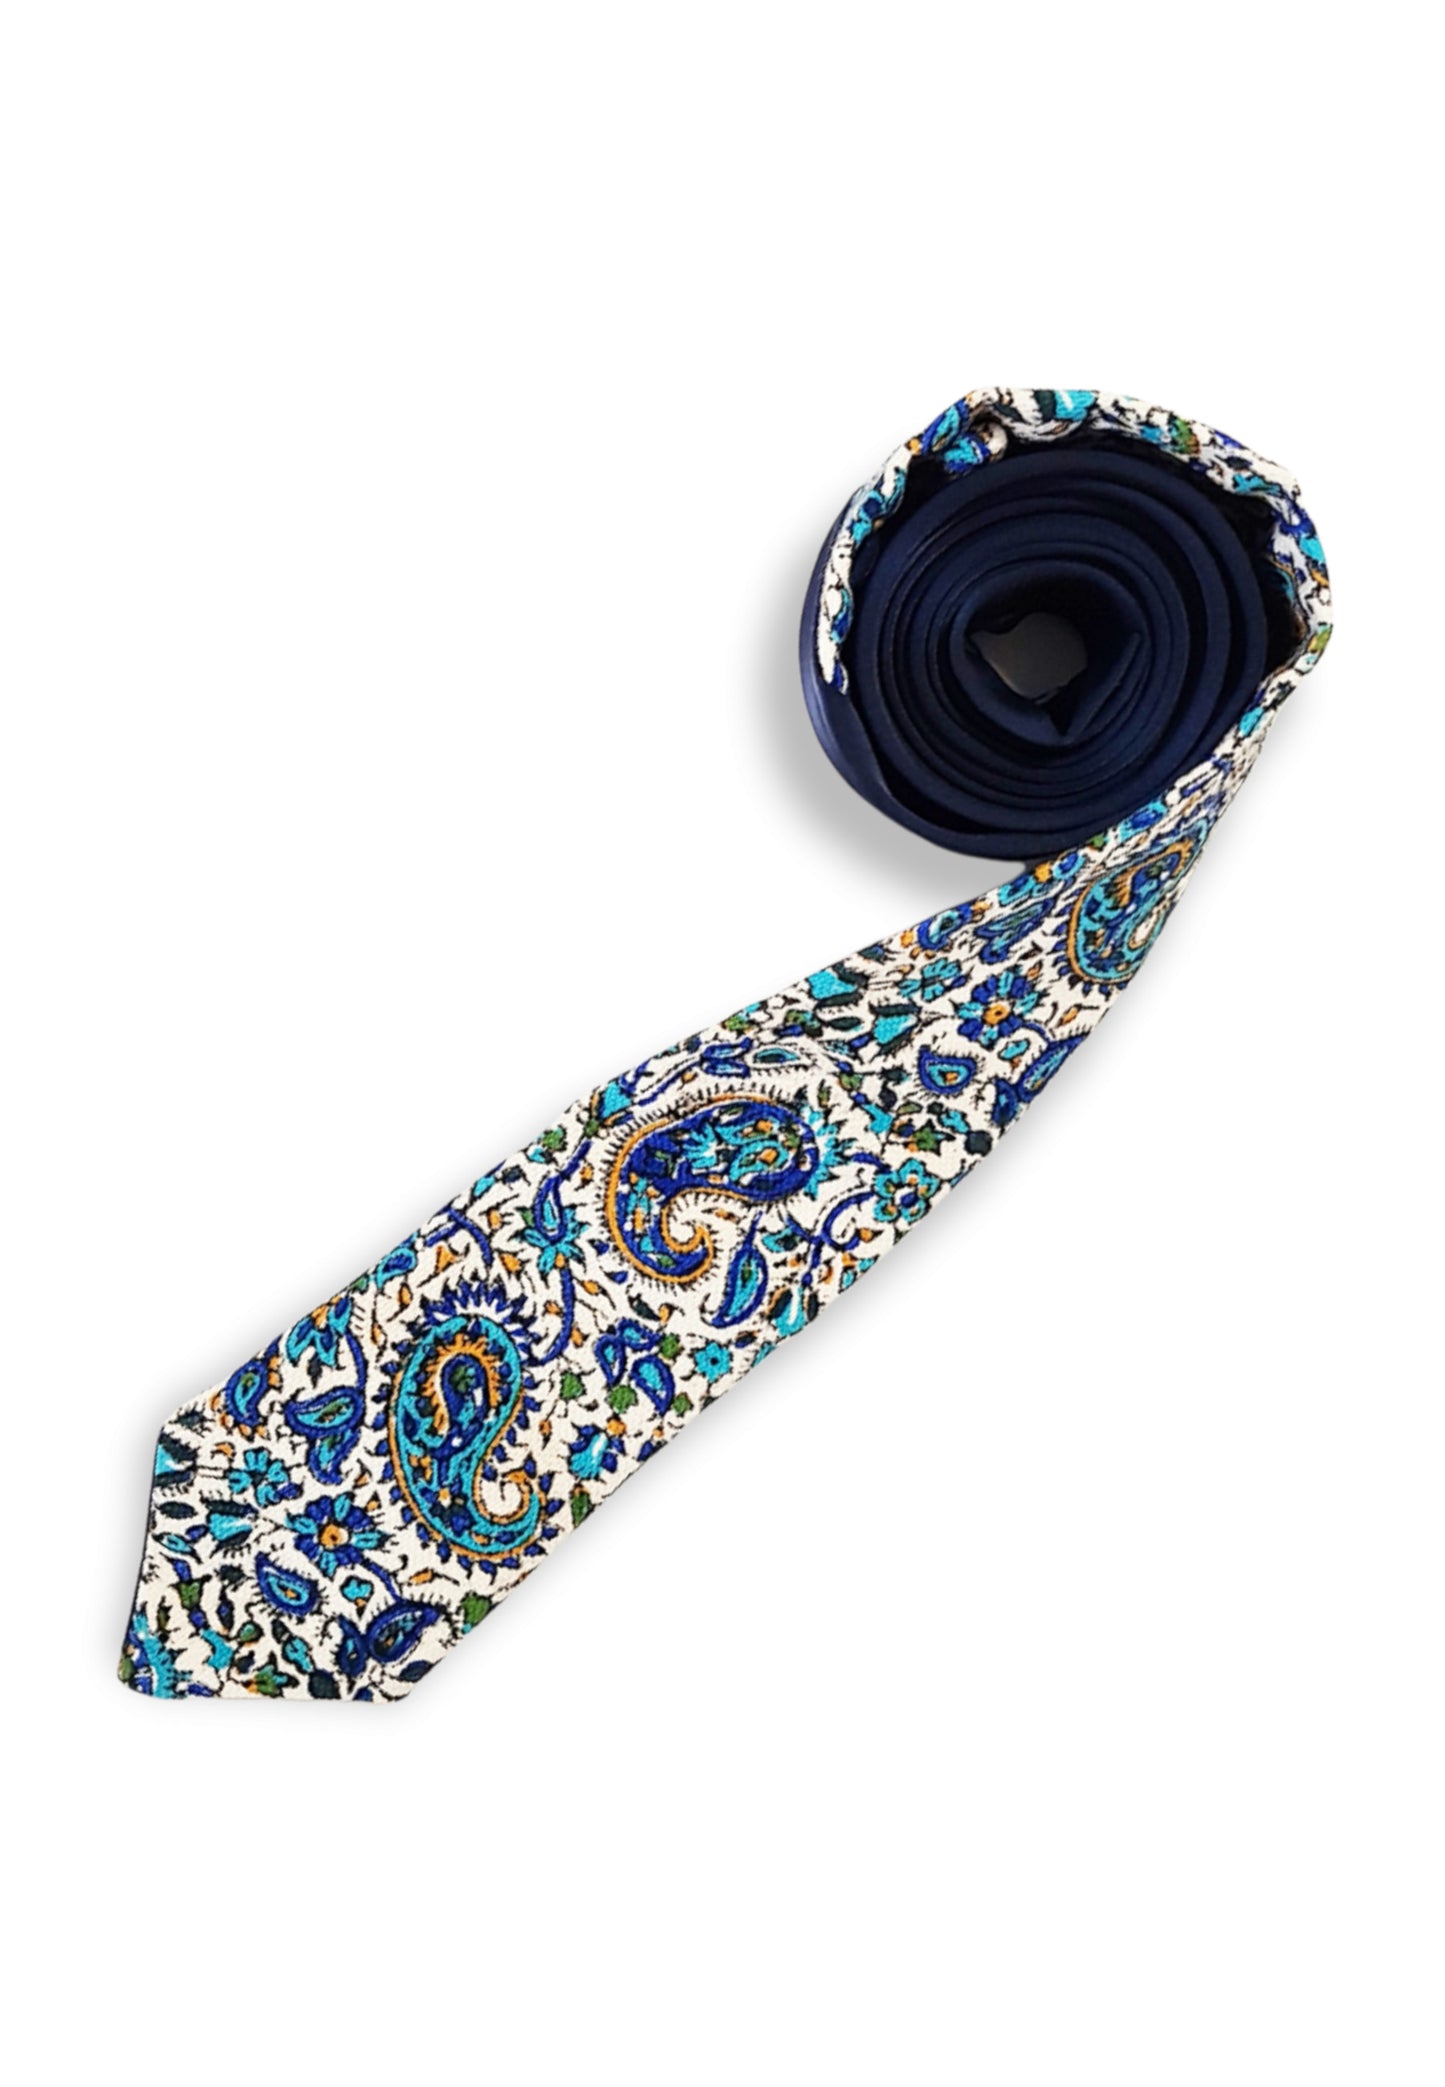 AFROZAN - Artisan Hand-printed Necktie -NB